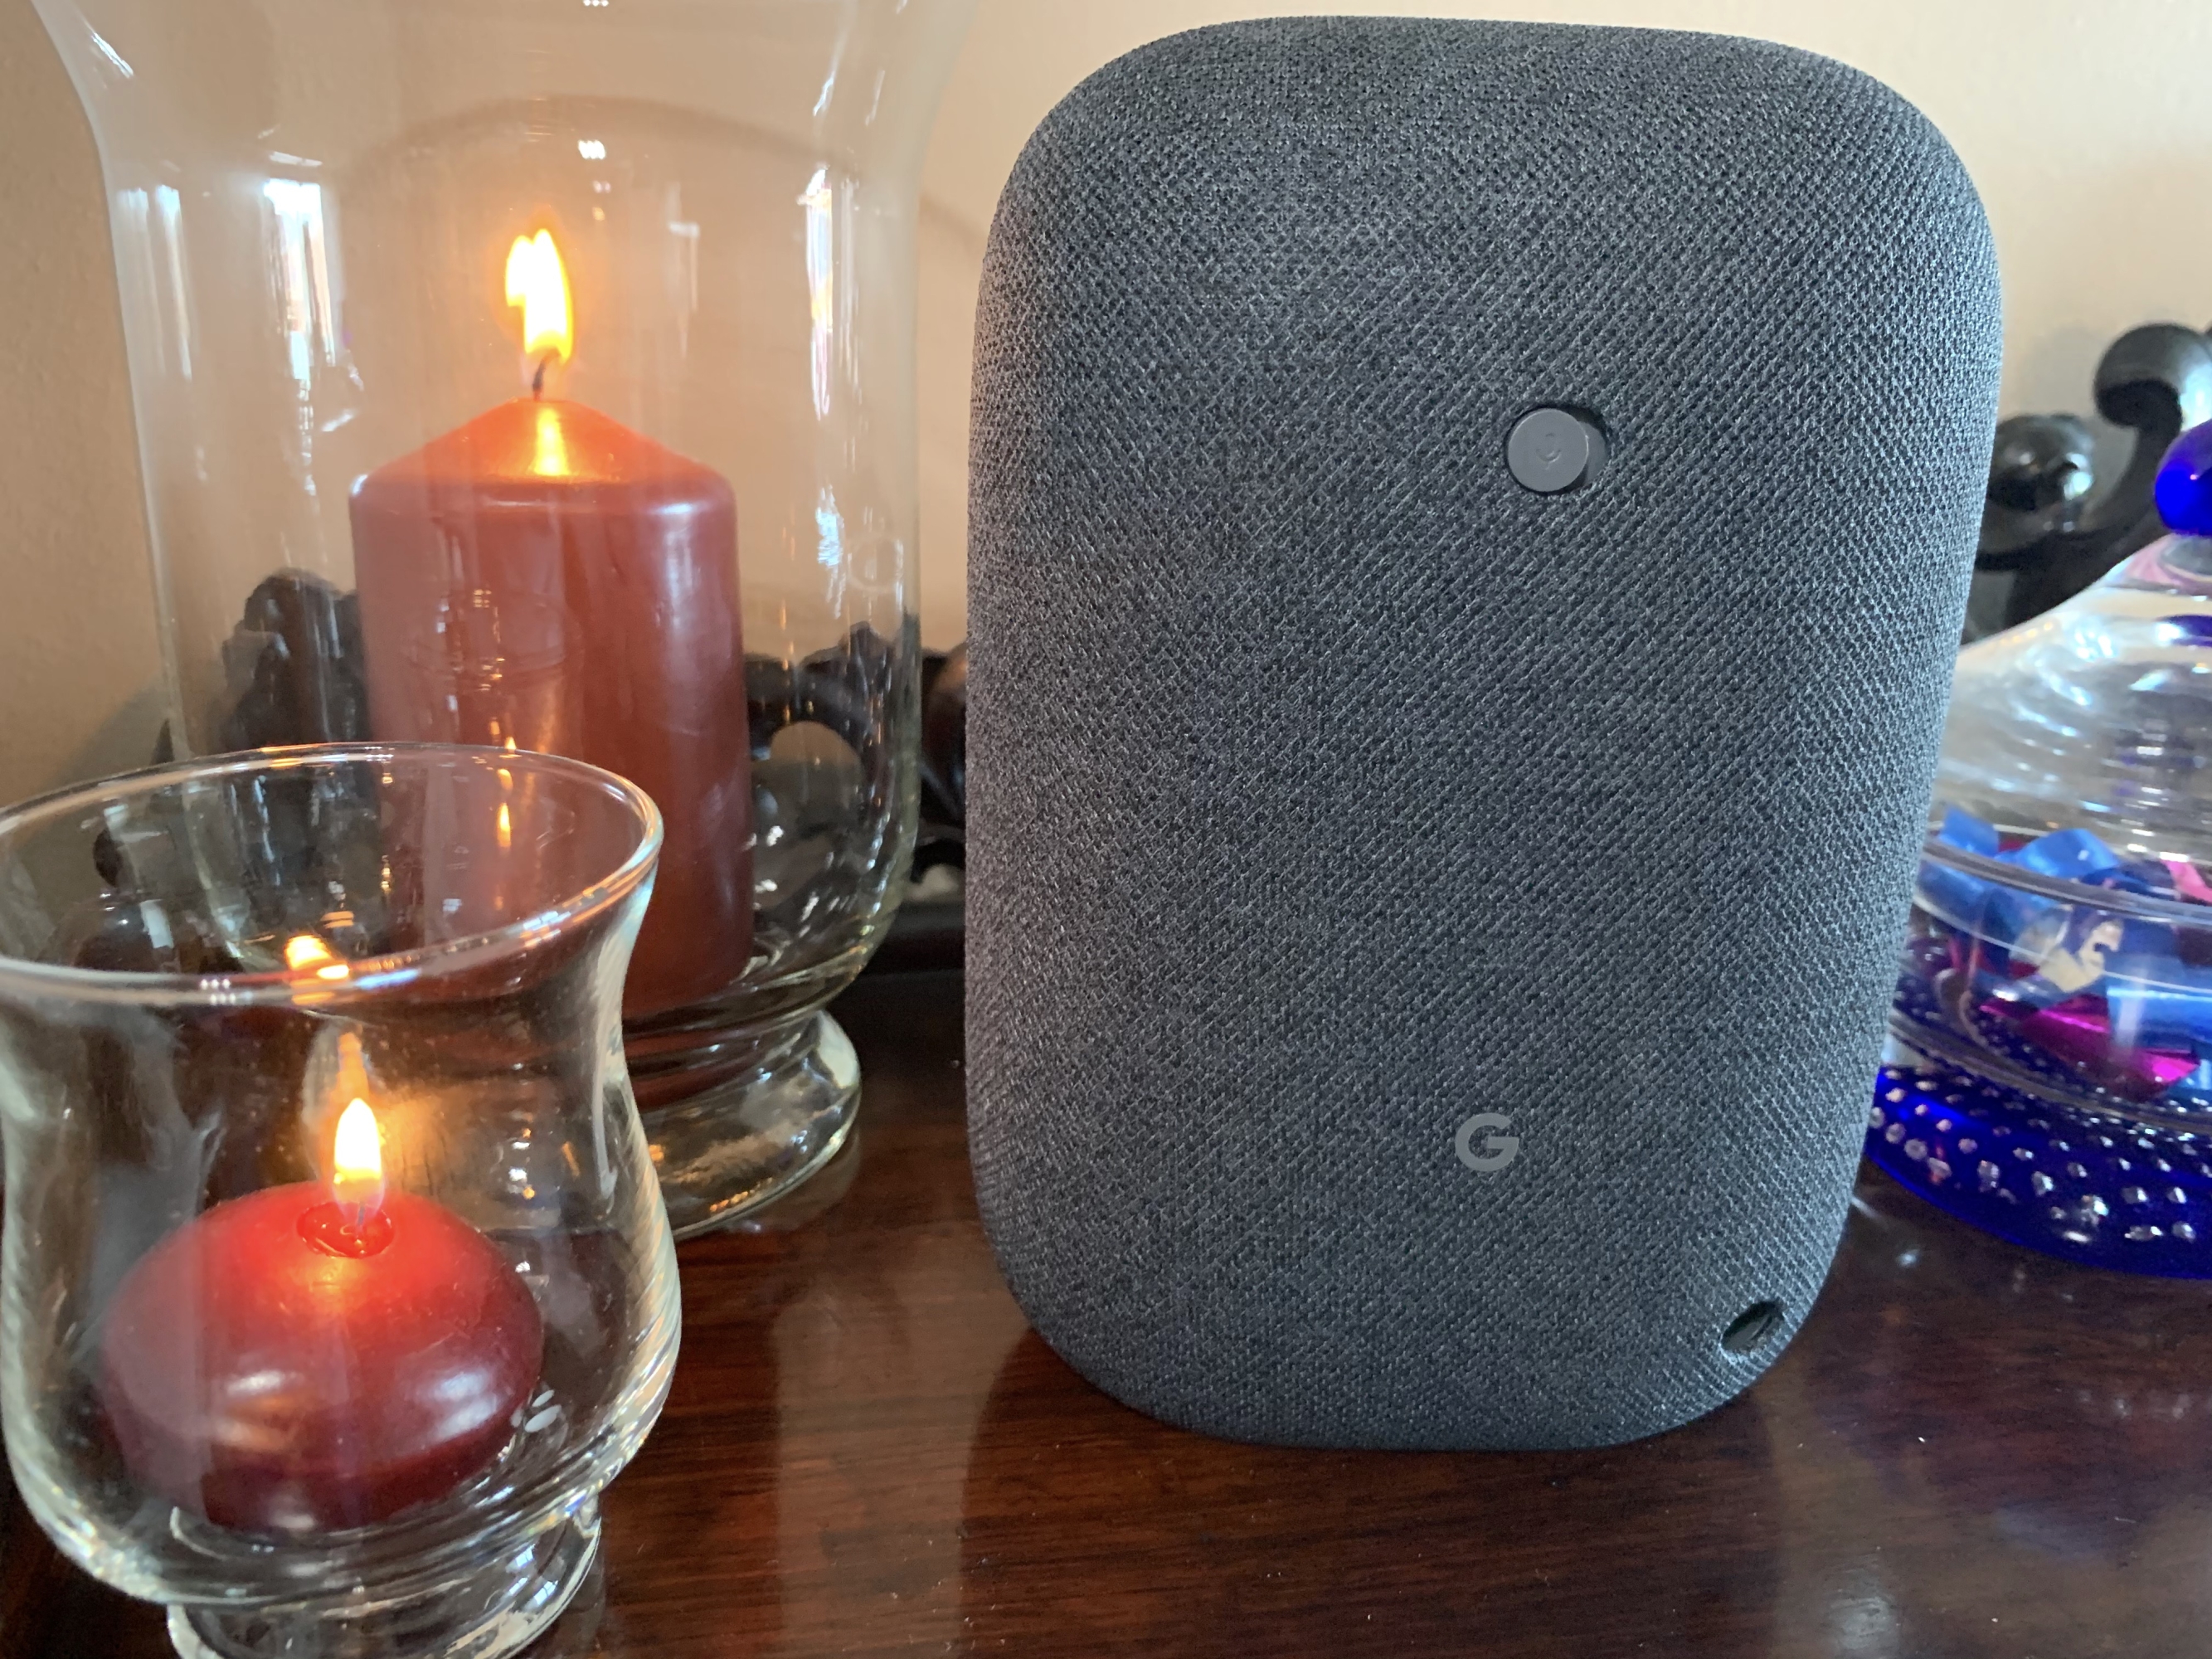 
                                    
                                Google Nest Audio, lo smart speaker amico che risolve problemi